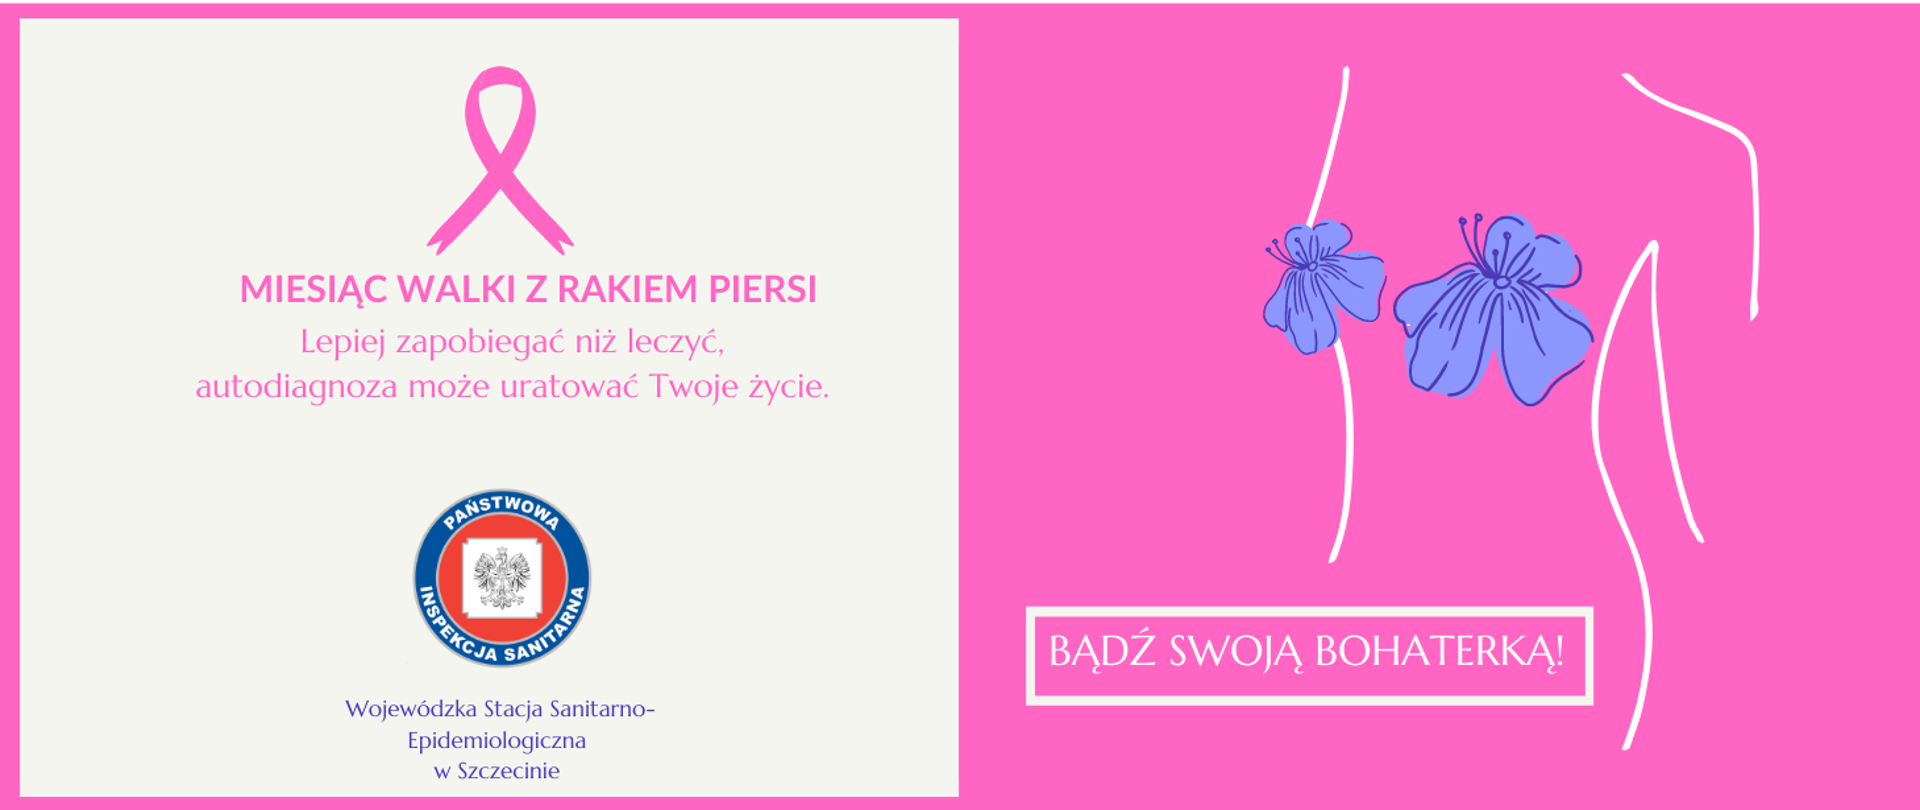 Różowa wstążka, Miesiąc walki z rakiem piersi. Na różowym tle zarys tułowia kobiety i hasło kampanii BĄDŹ SWOJĄ BOHATERKĄ!